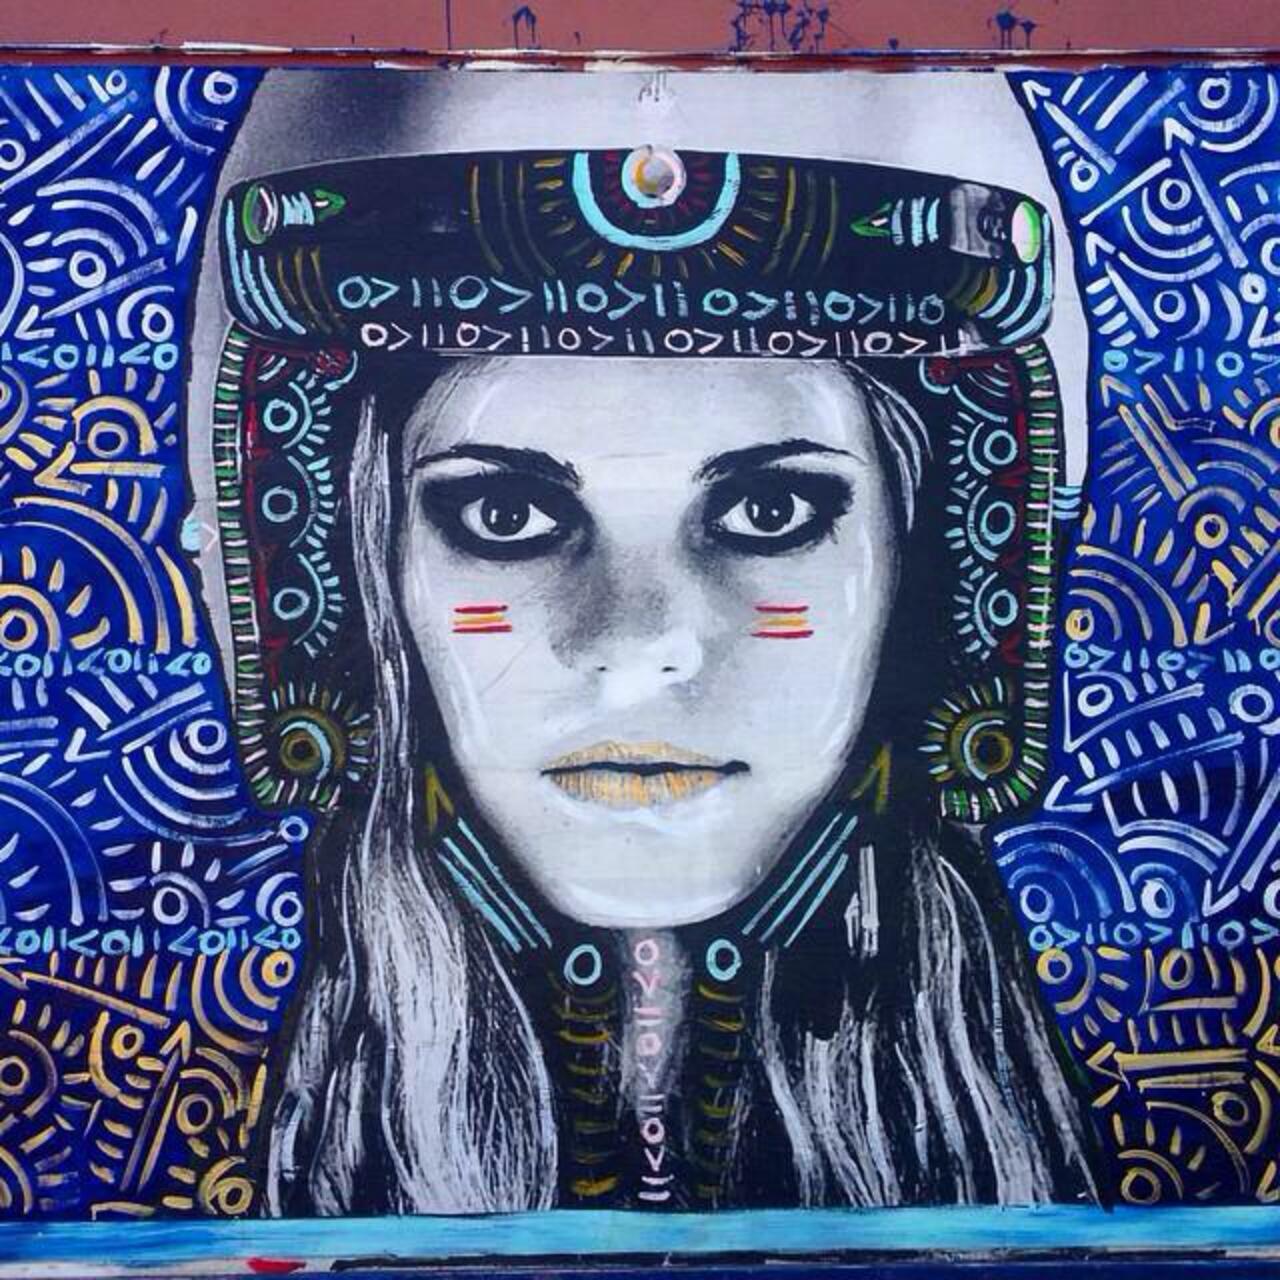 Street Art by Kelcey Fisher in LA
Photo by djcatnap

#art #arte #graffiti #streetart http://t.co/w6vD9TDXaw